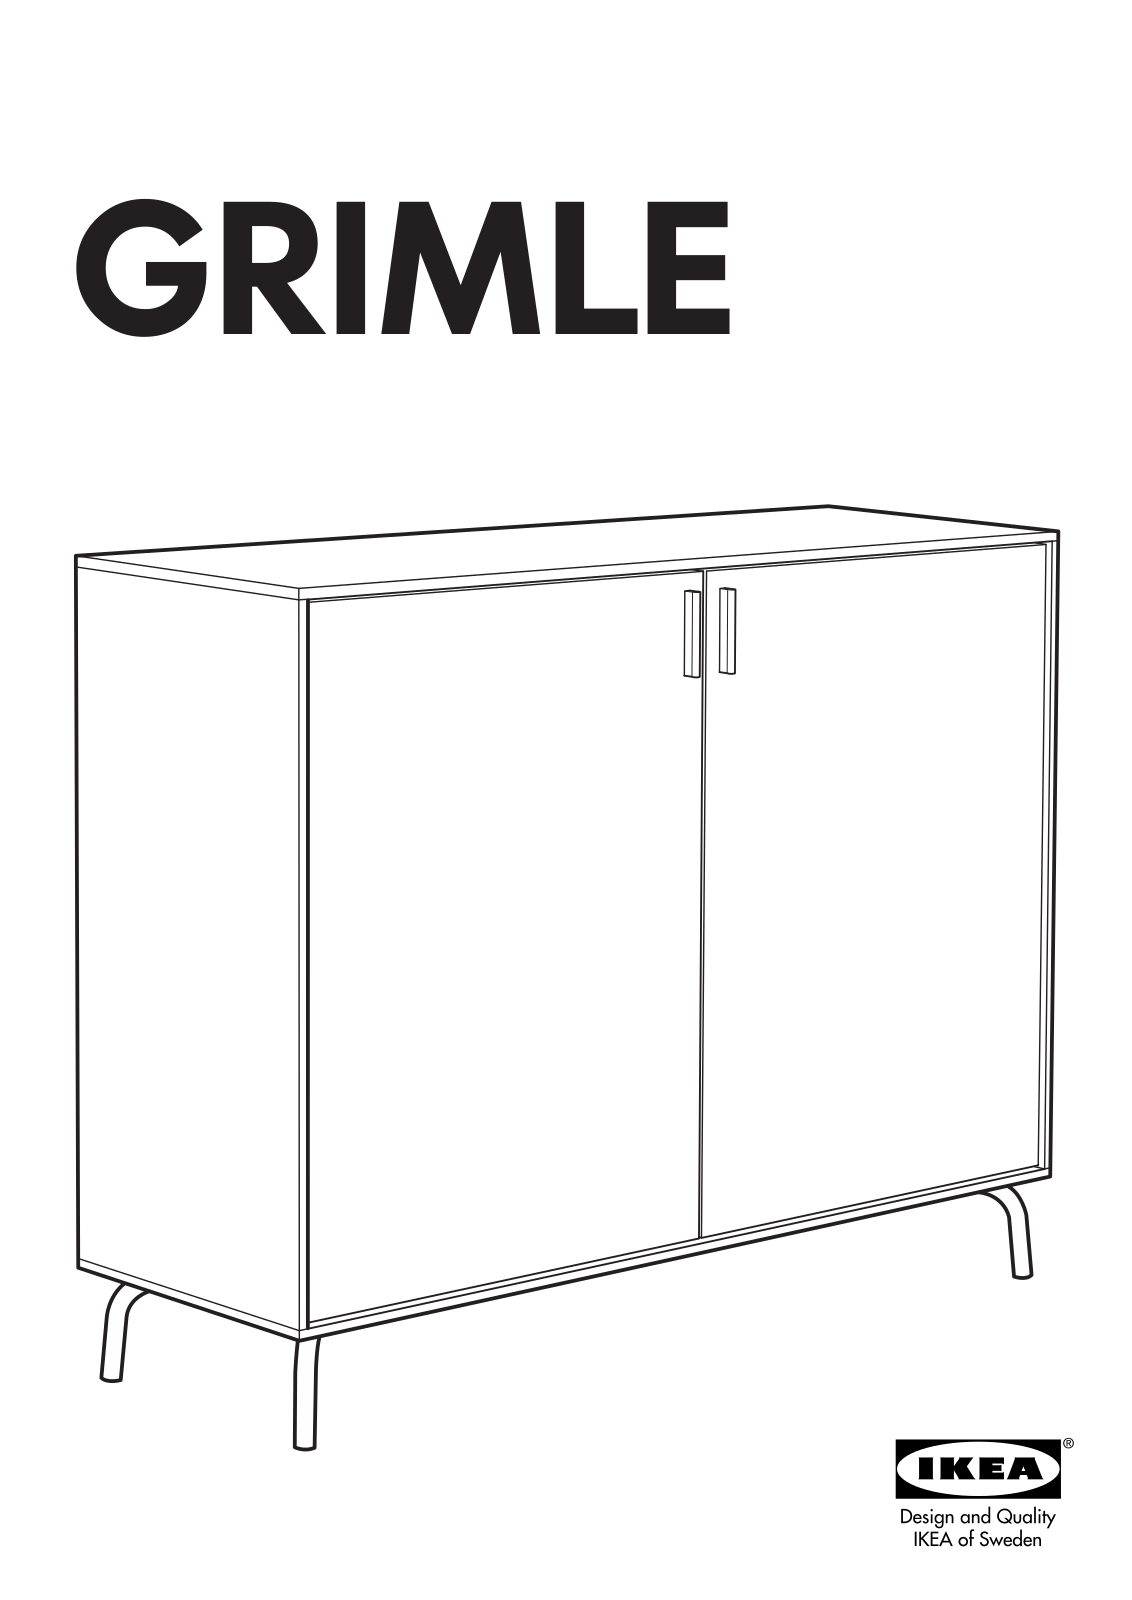 Ikea GRIMLE BUFFET User Manual